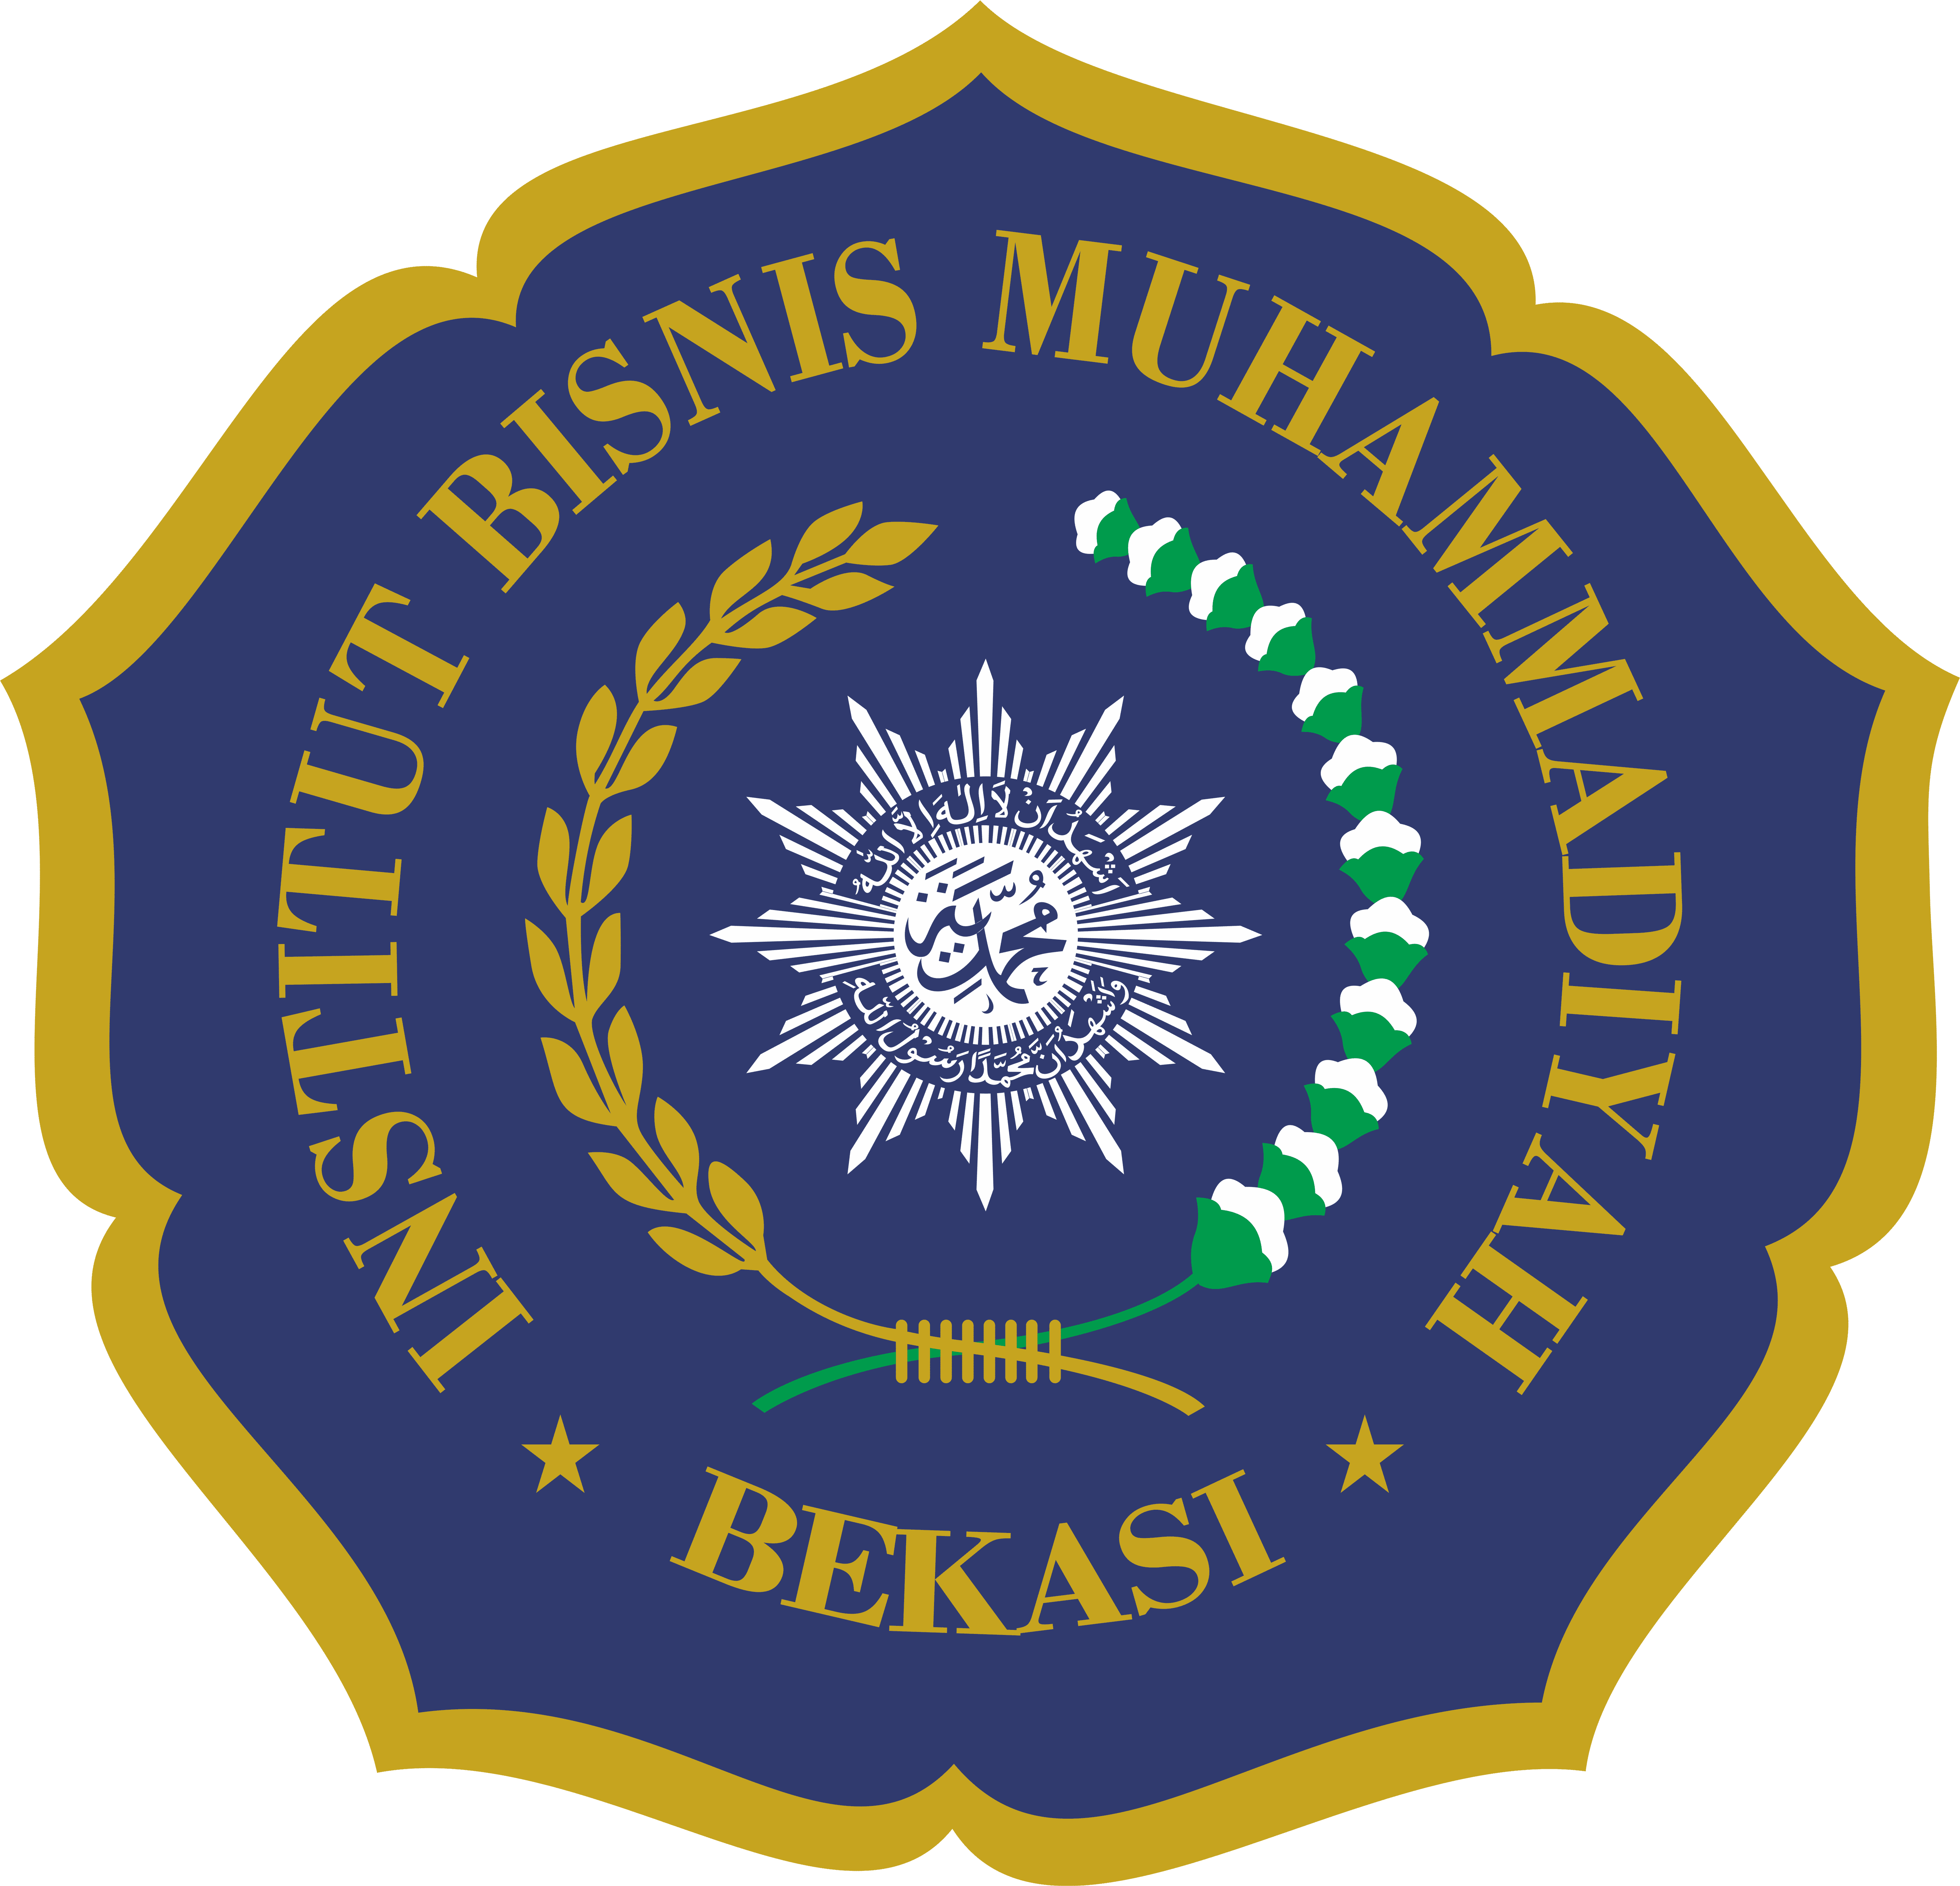 Institut Bisnis Muhammadiyah Bekasi